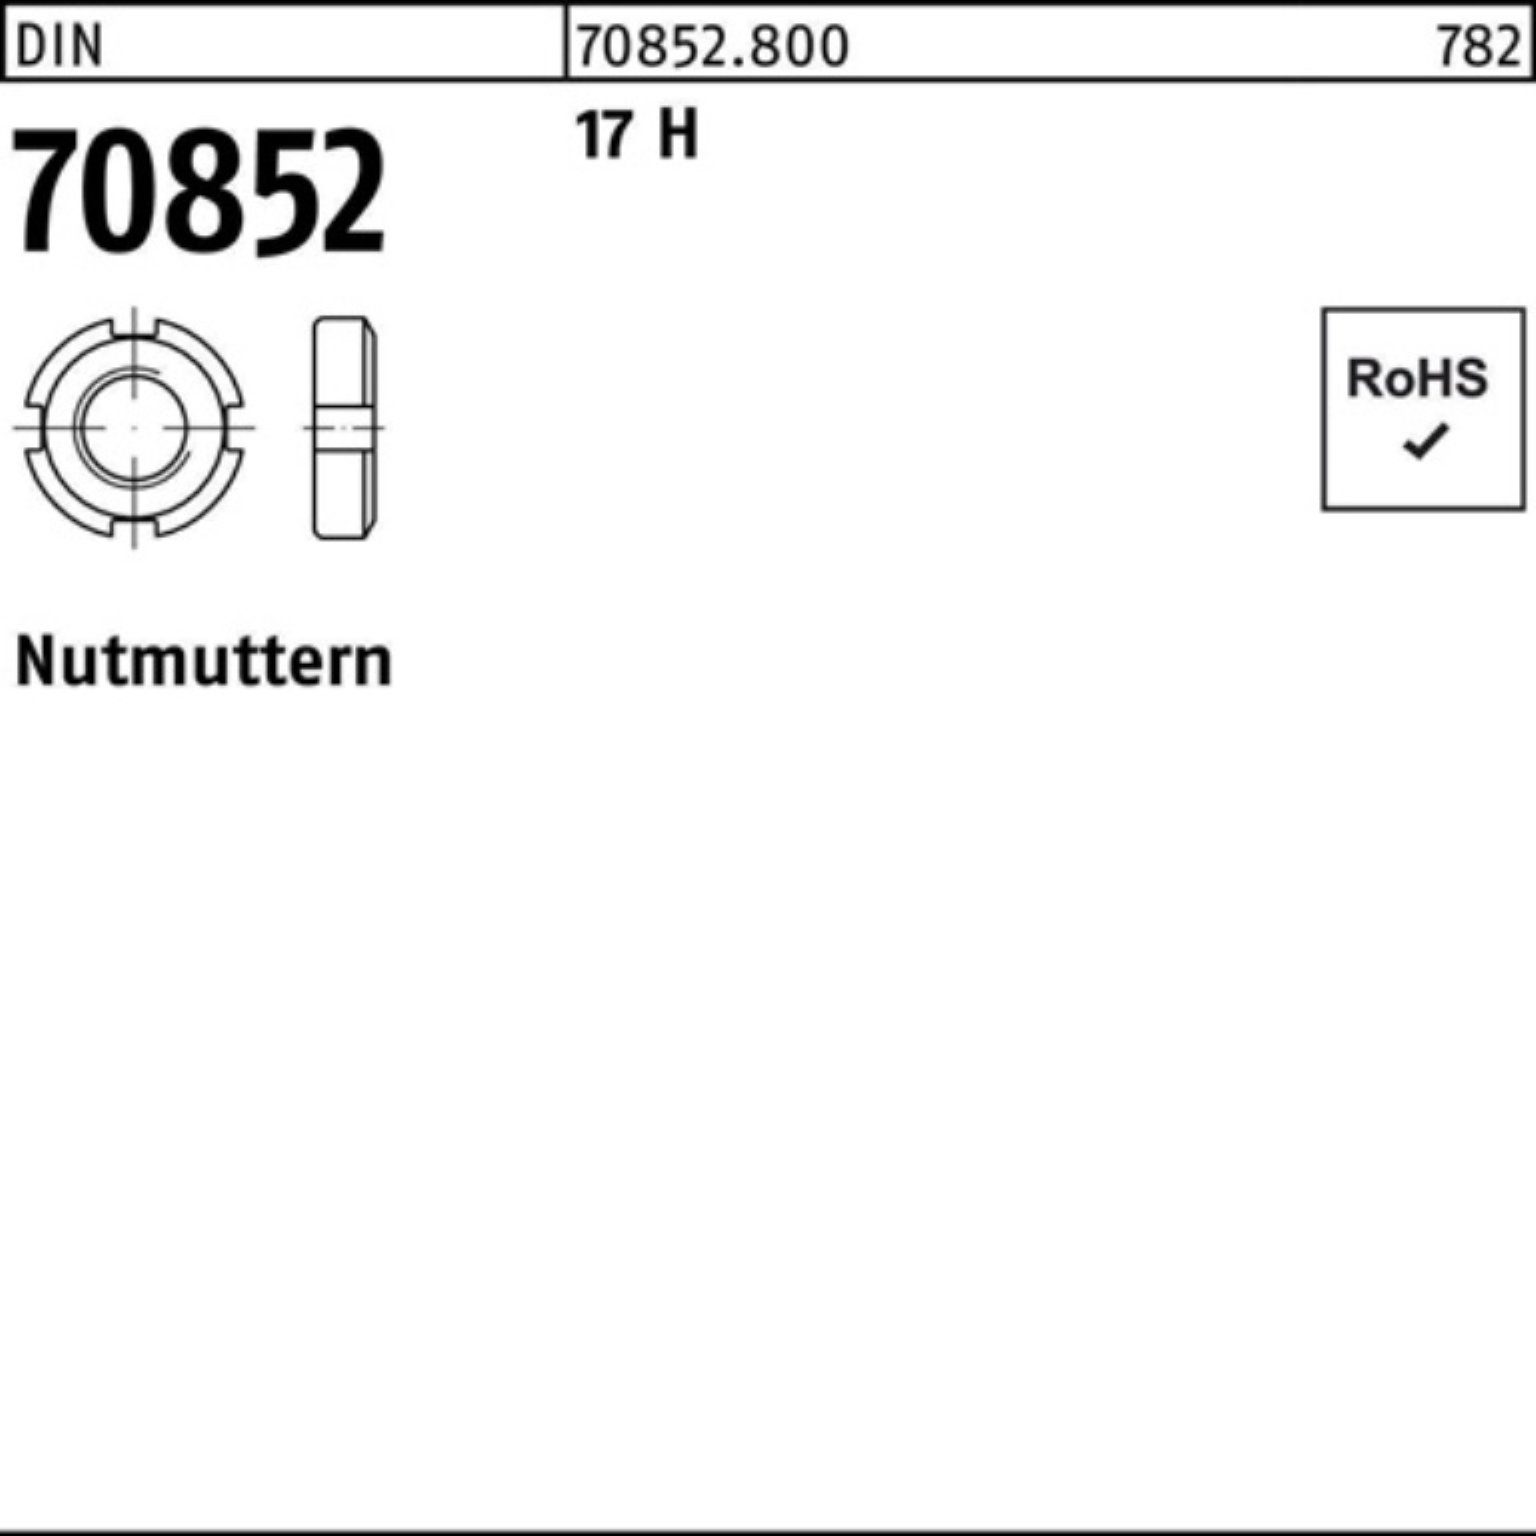 Reyher Nutmutter 100er Pack Nutmutter DIN 70852 M90x 1,5 17 H 1 Stück DIN 70852 17 H N